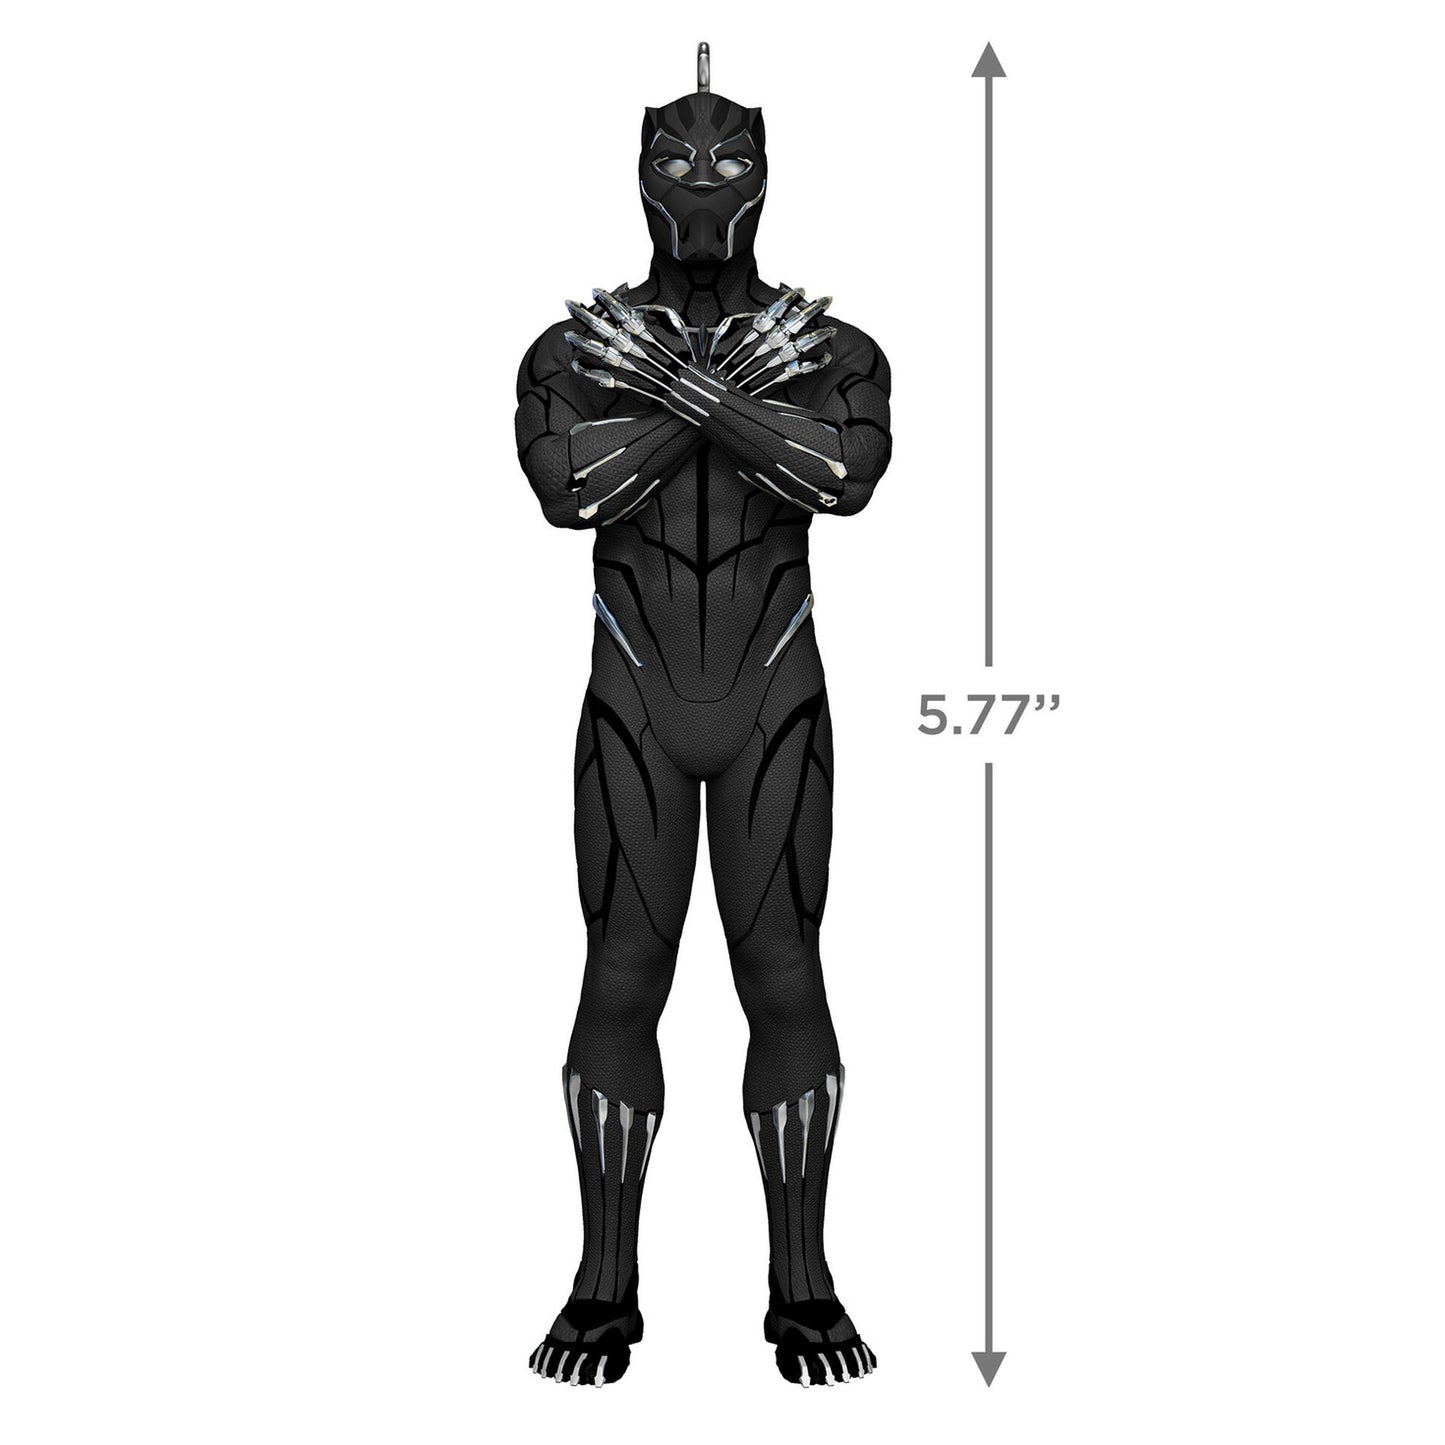 Black Marvel Black Panther Ornament